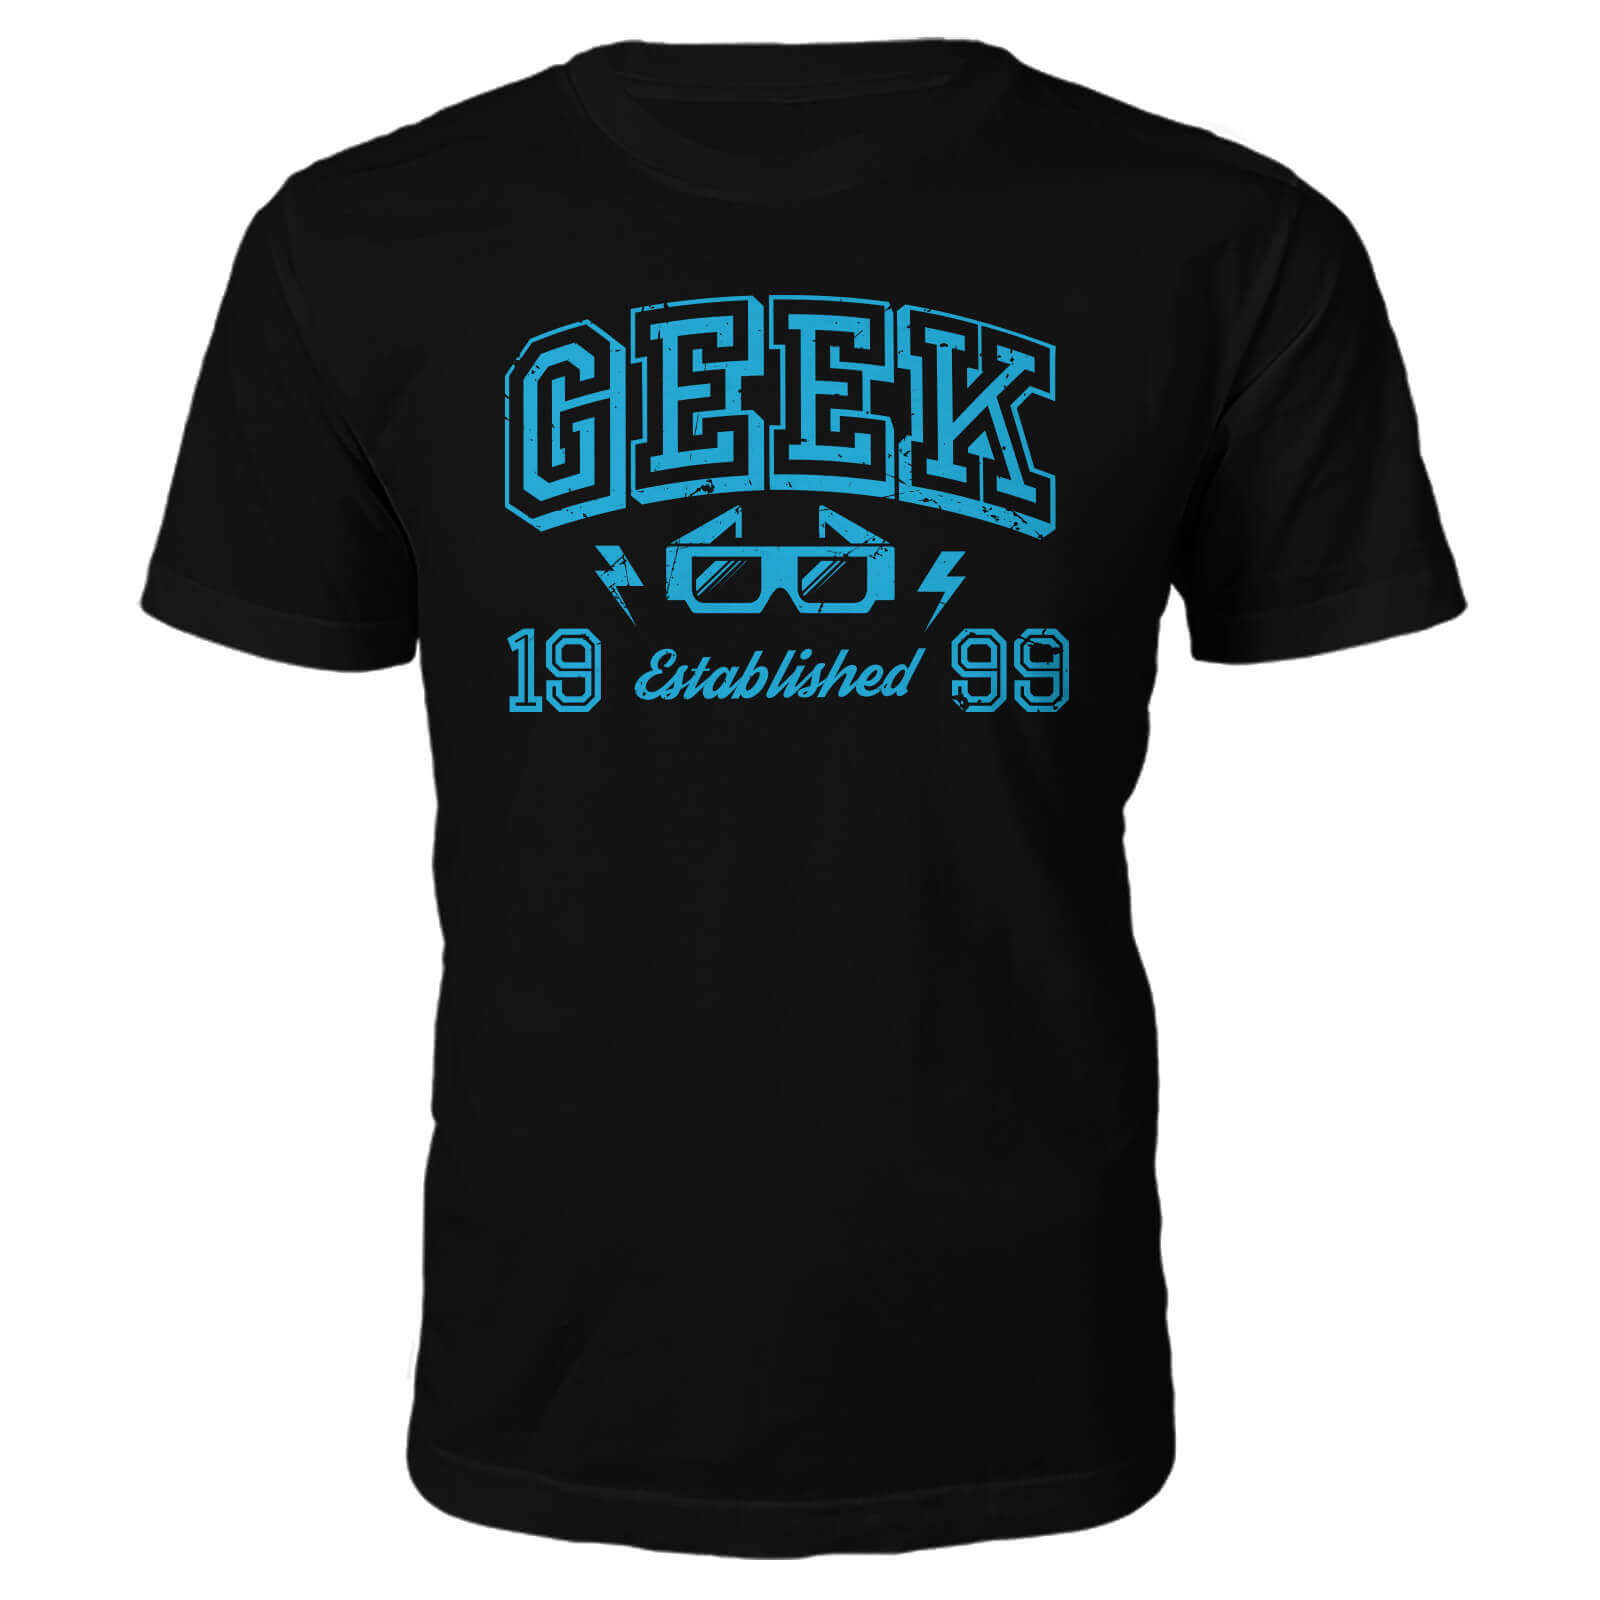 Geek Established 1990's T-Shirt- Black - L - 1999